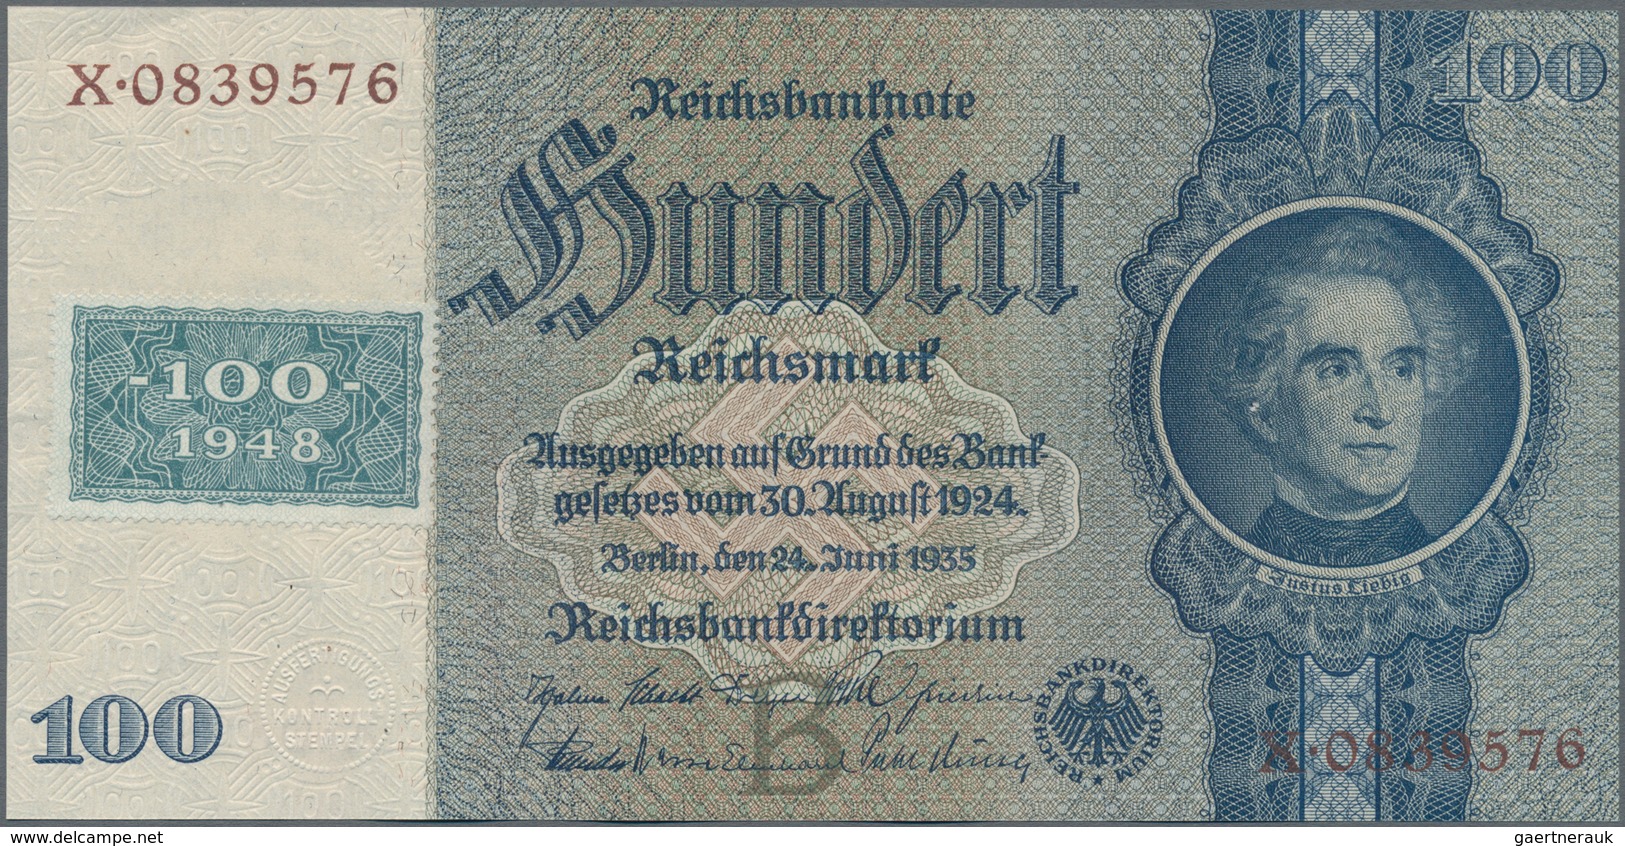 Deutschland - DDR: Kuponausgaben 1948 mit 10, 20, 50 und 100 Mark, Ro.334, 335, 337, 338 in kassenfr